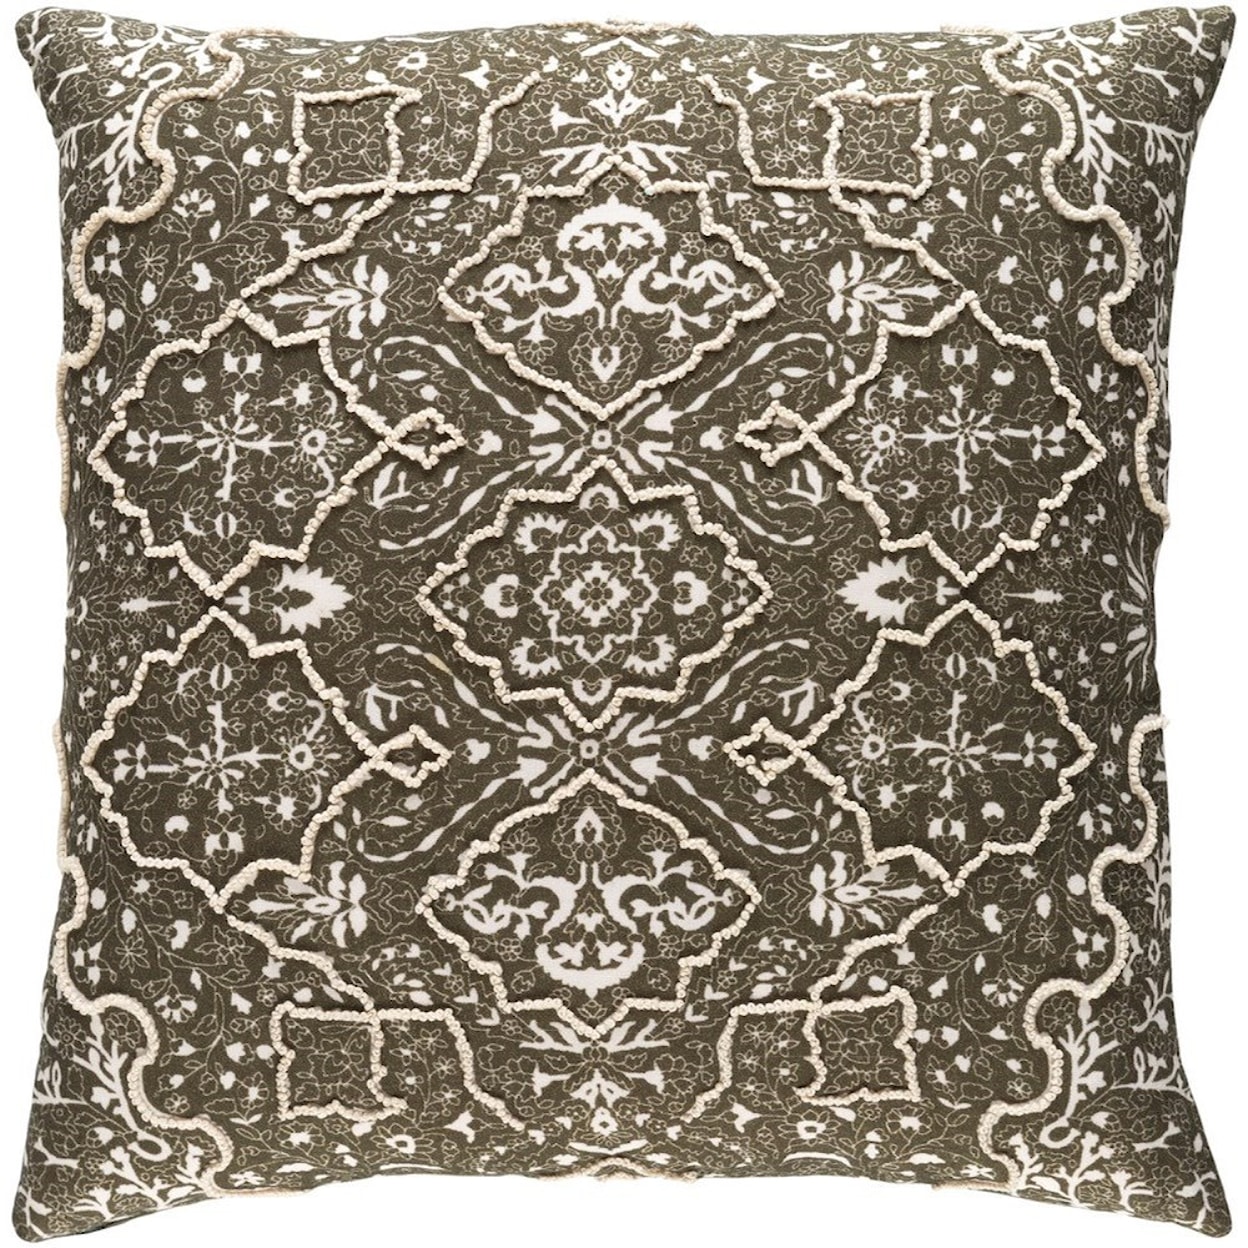 Surya Batik 20 x 20 x 4 Down Pillow Kit